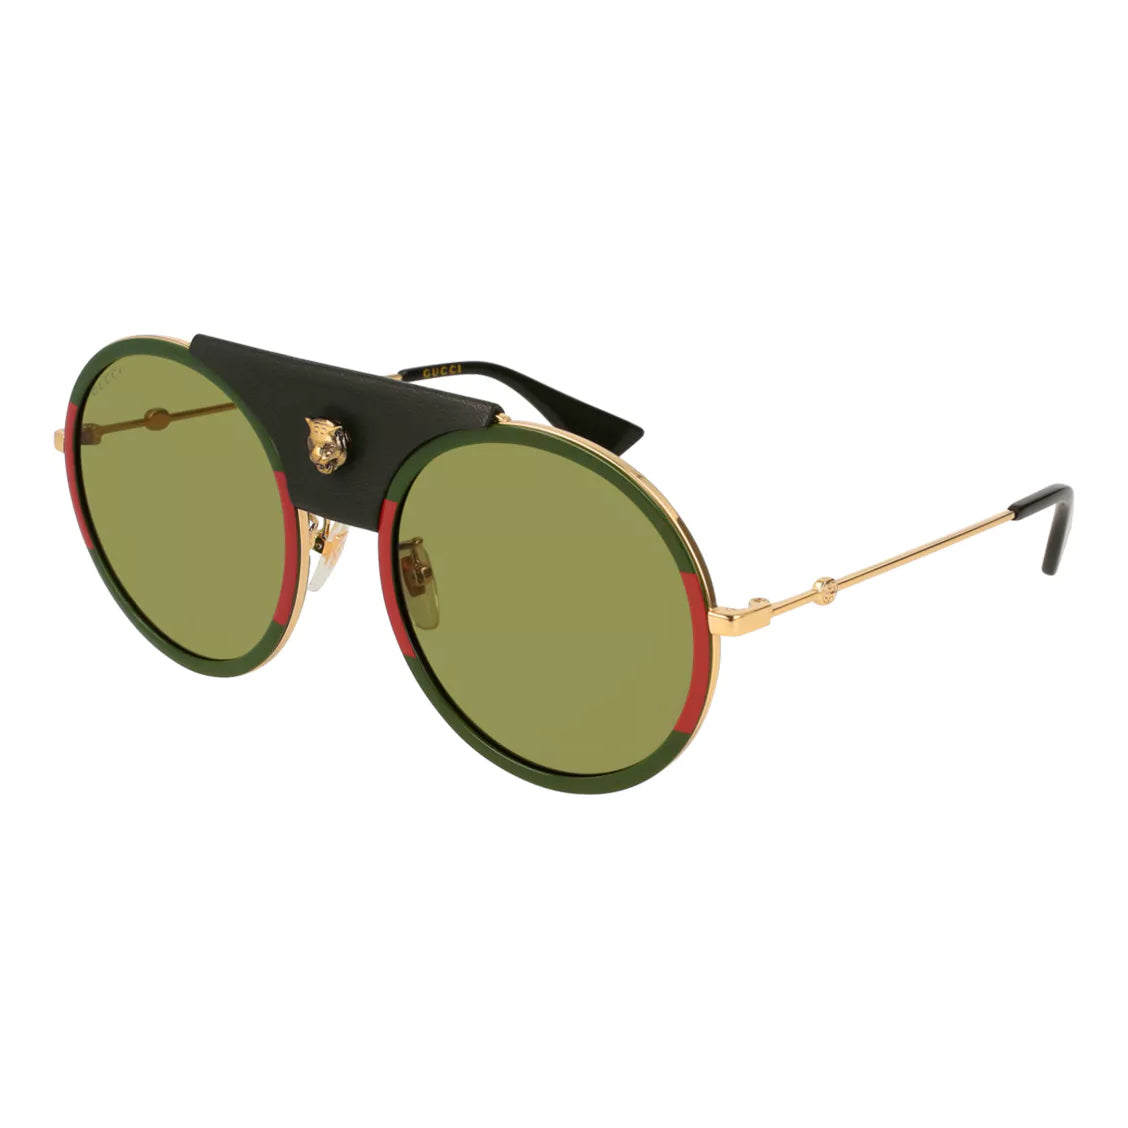 Gucci Women's Sunglasses Round Pilot Double-Bridge Green GG0061S-017 56